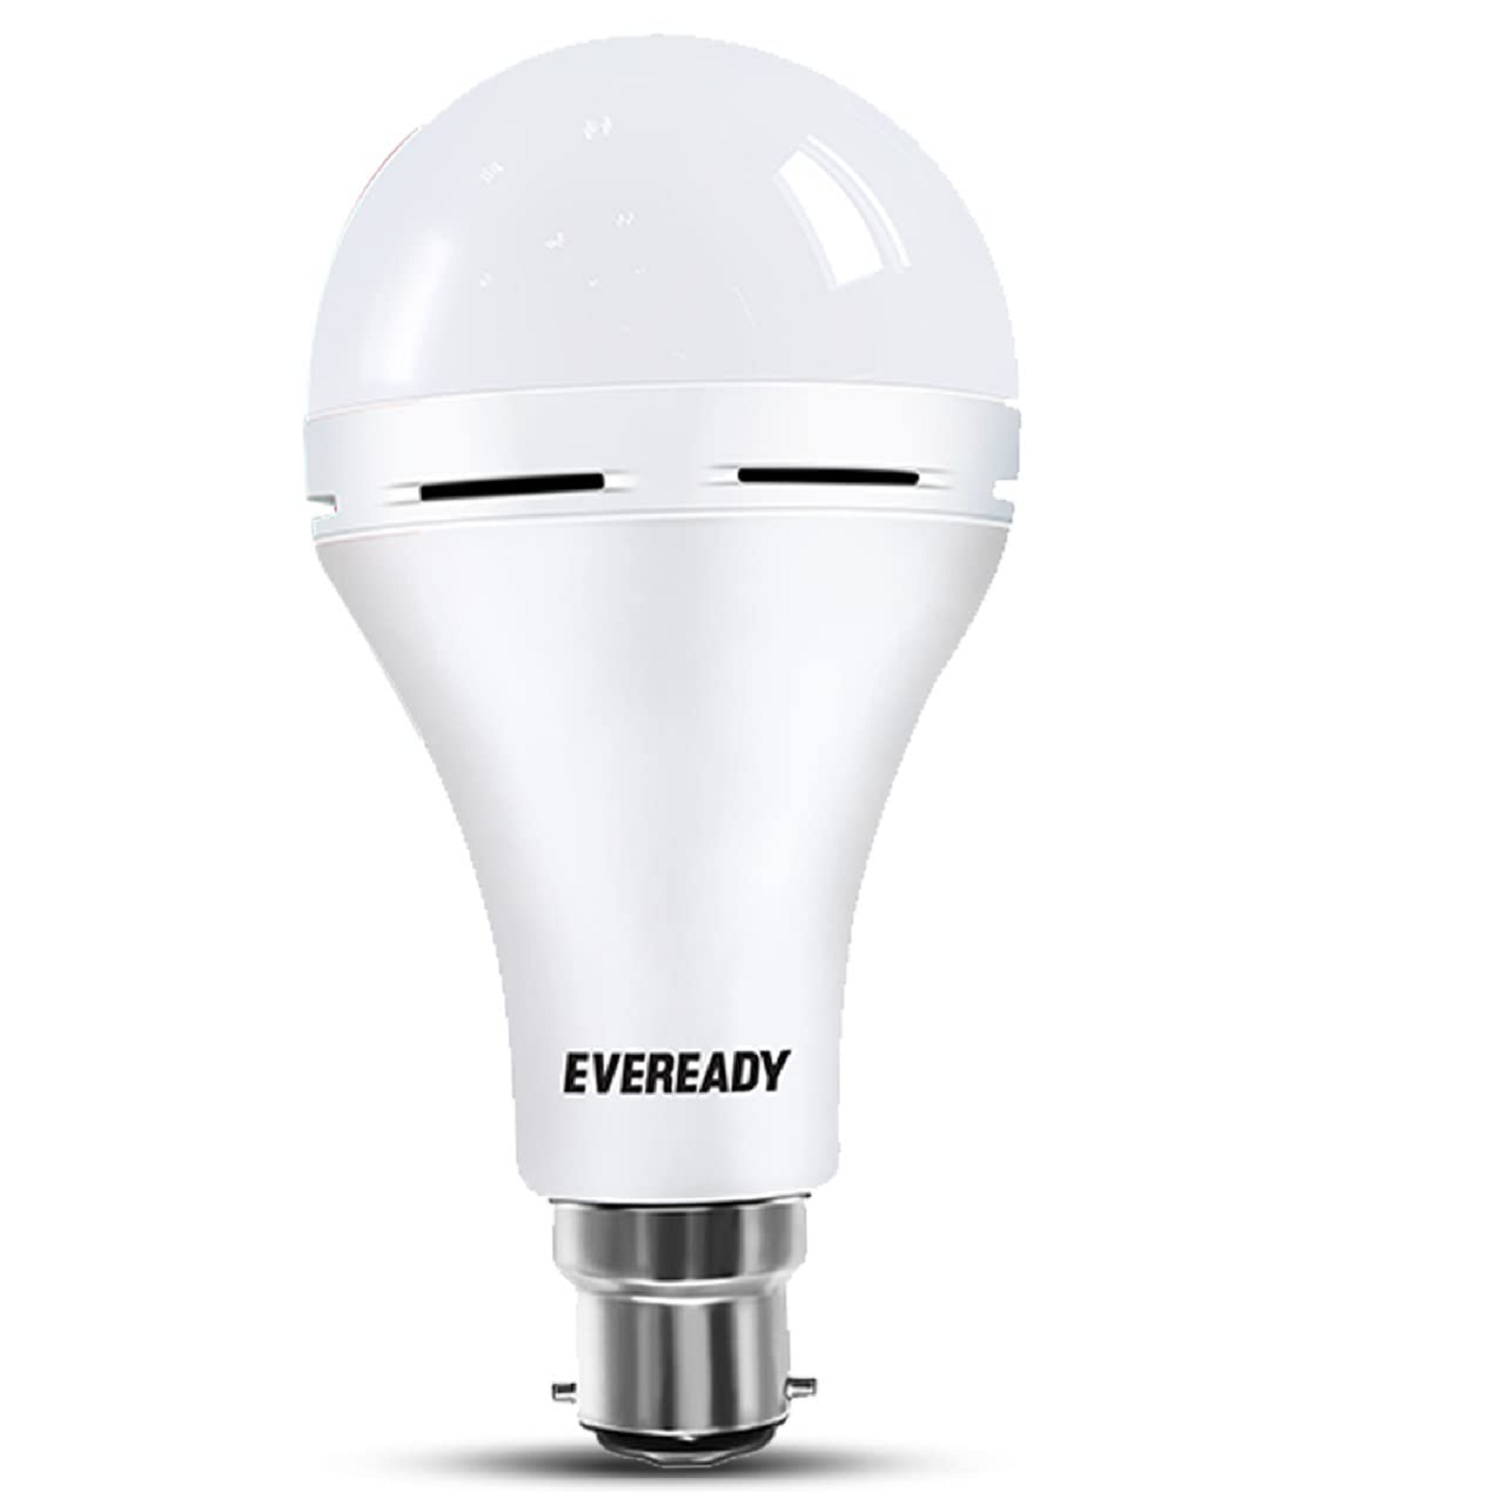 Eveready 15 watt Inverter Emergency LED Bulb